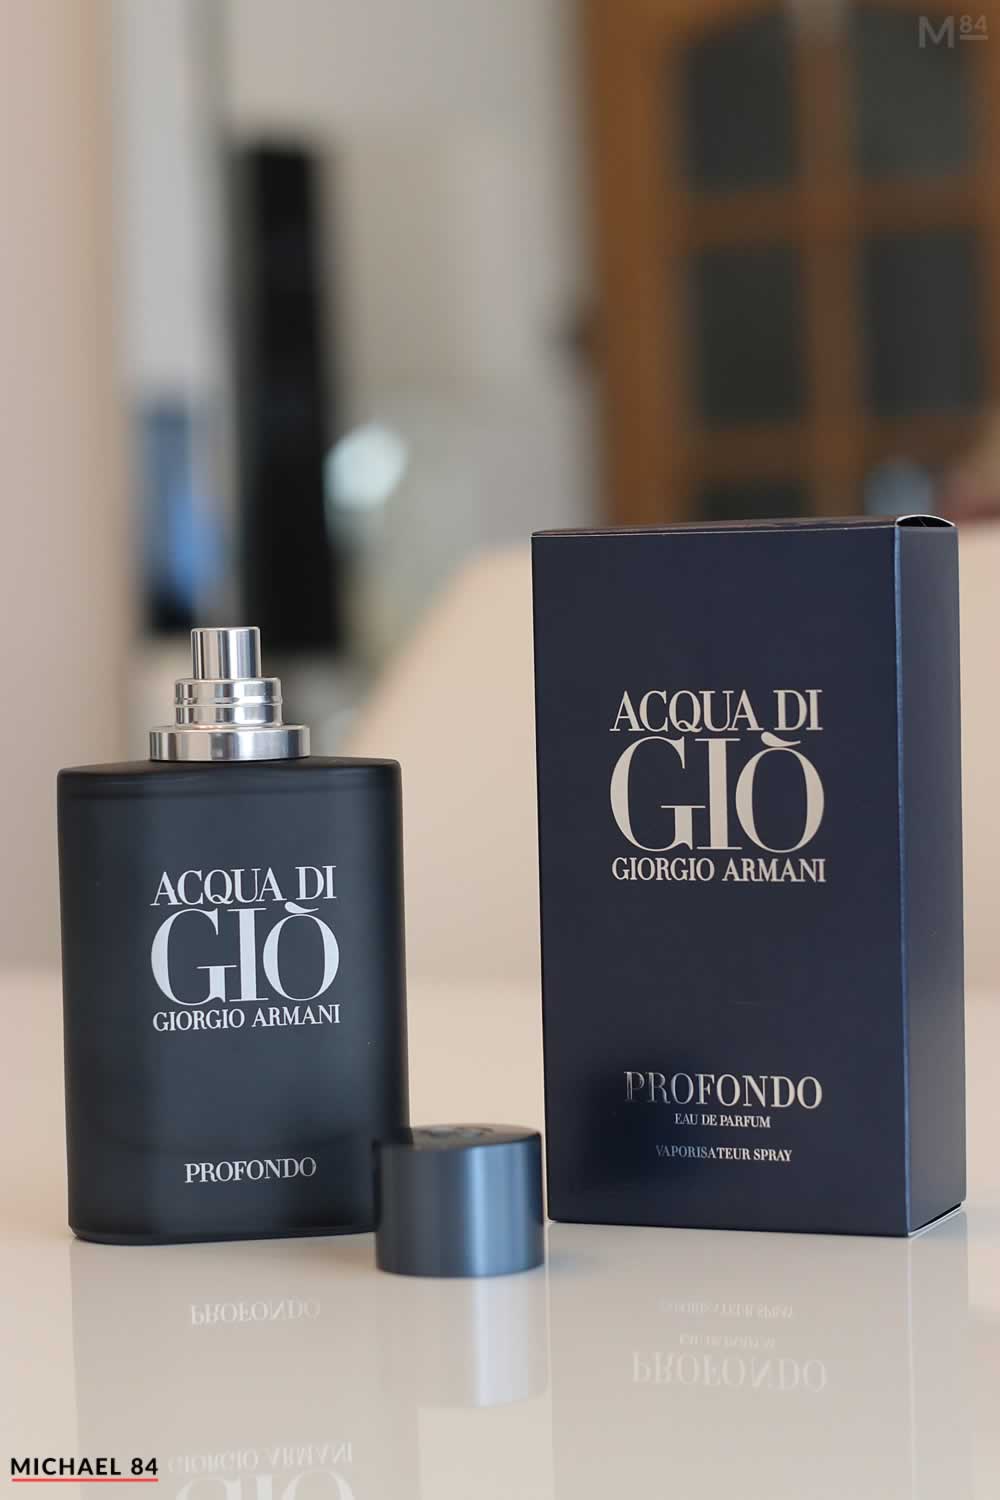 Acqua Di Gio Profondo By Giorgio Armani Review - Here's What It Smells Like  | Michael 84